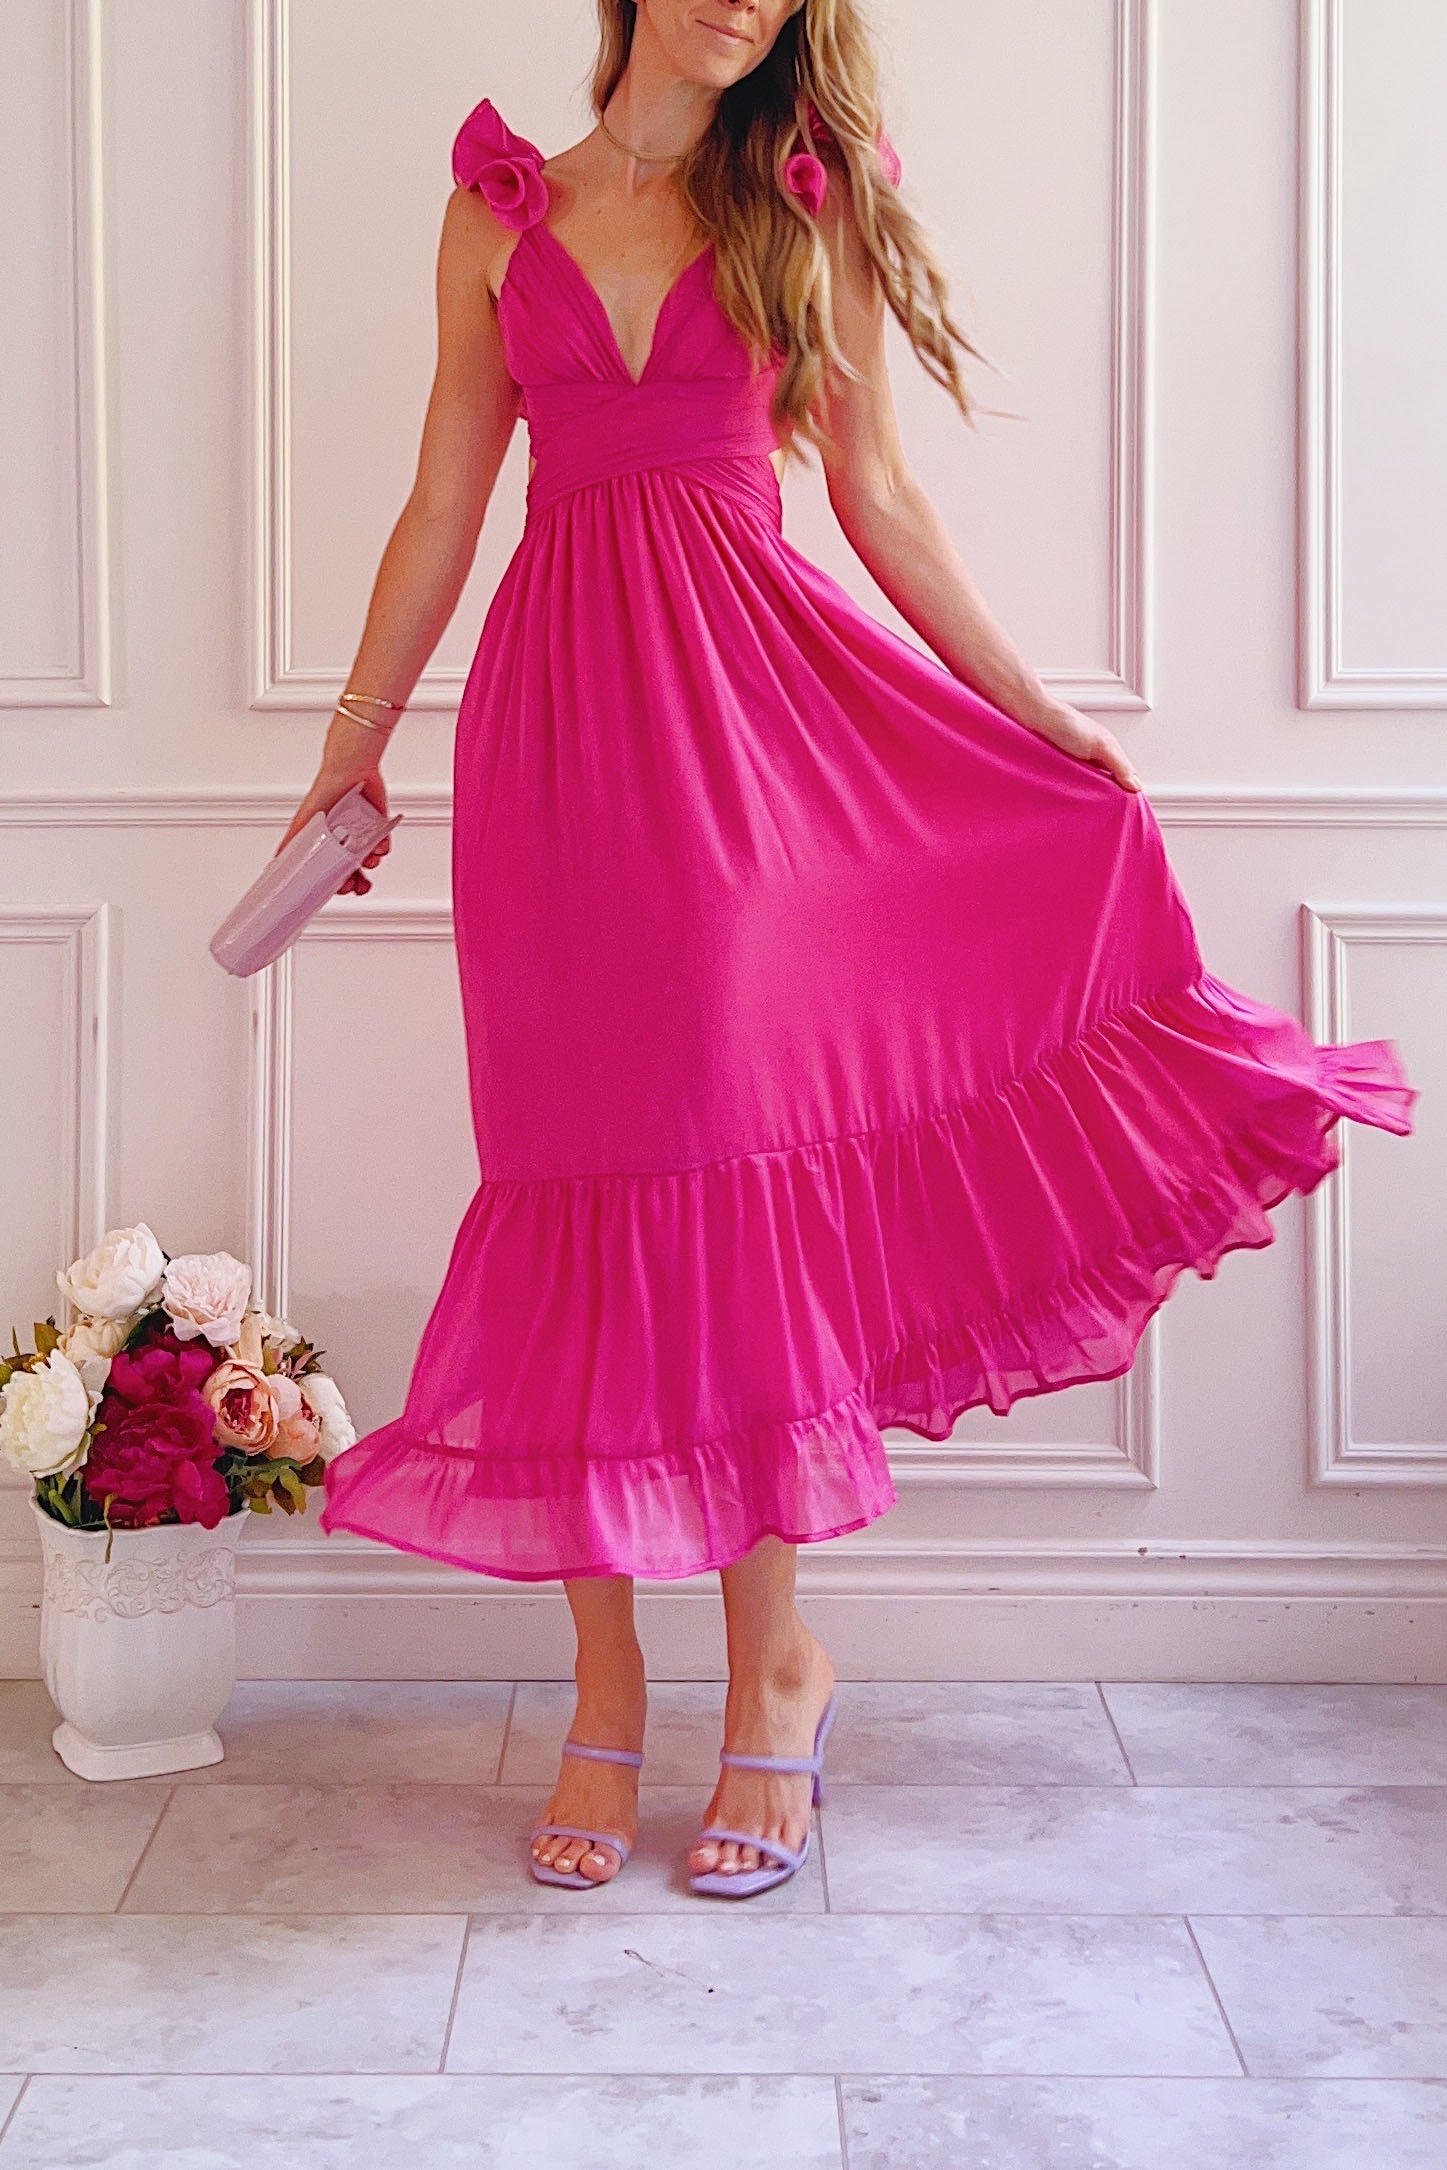 Calantha | Long Fuschia Dress w/ Ruffled Straps | Boutique 1861 model